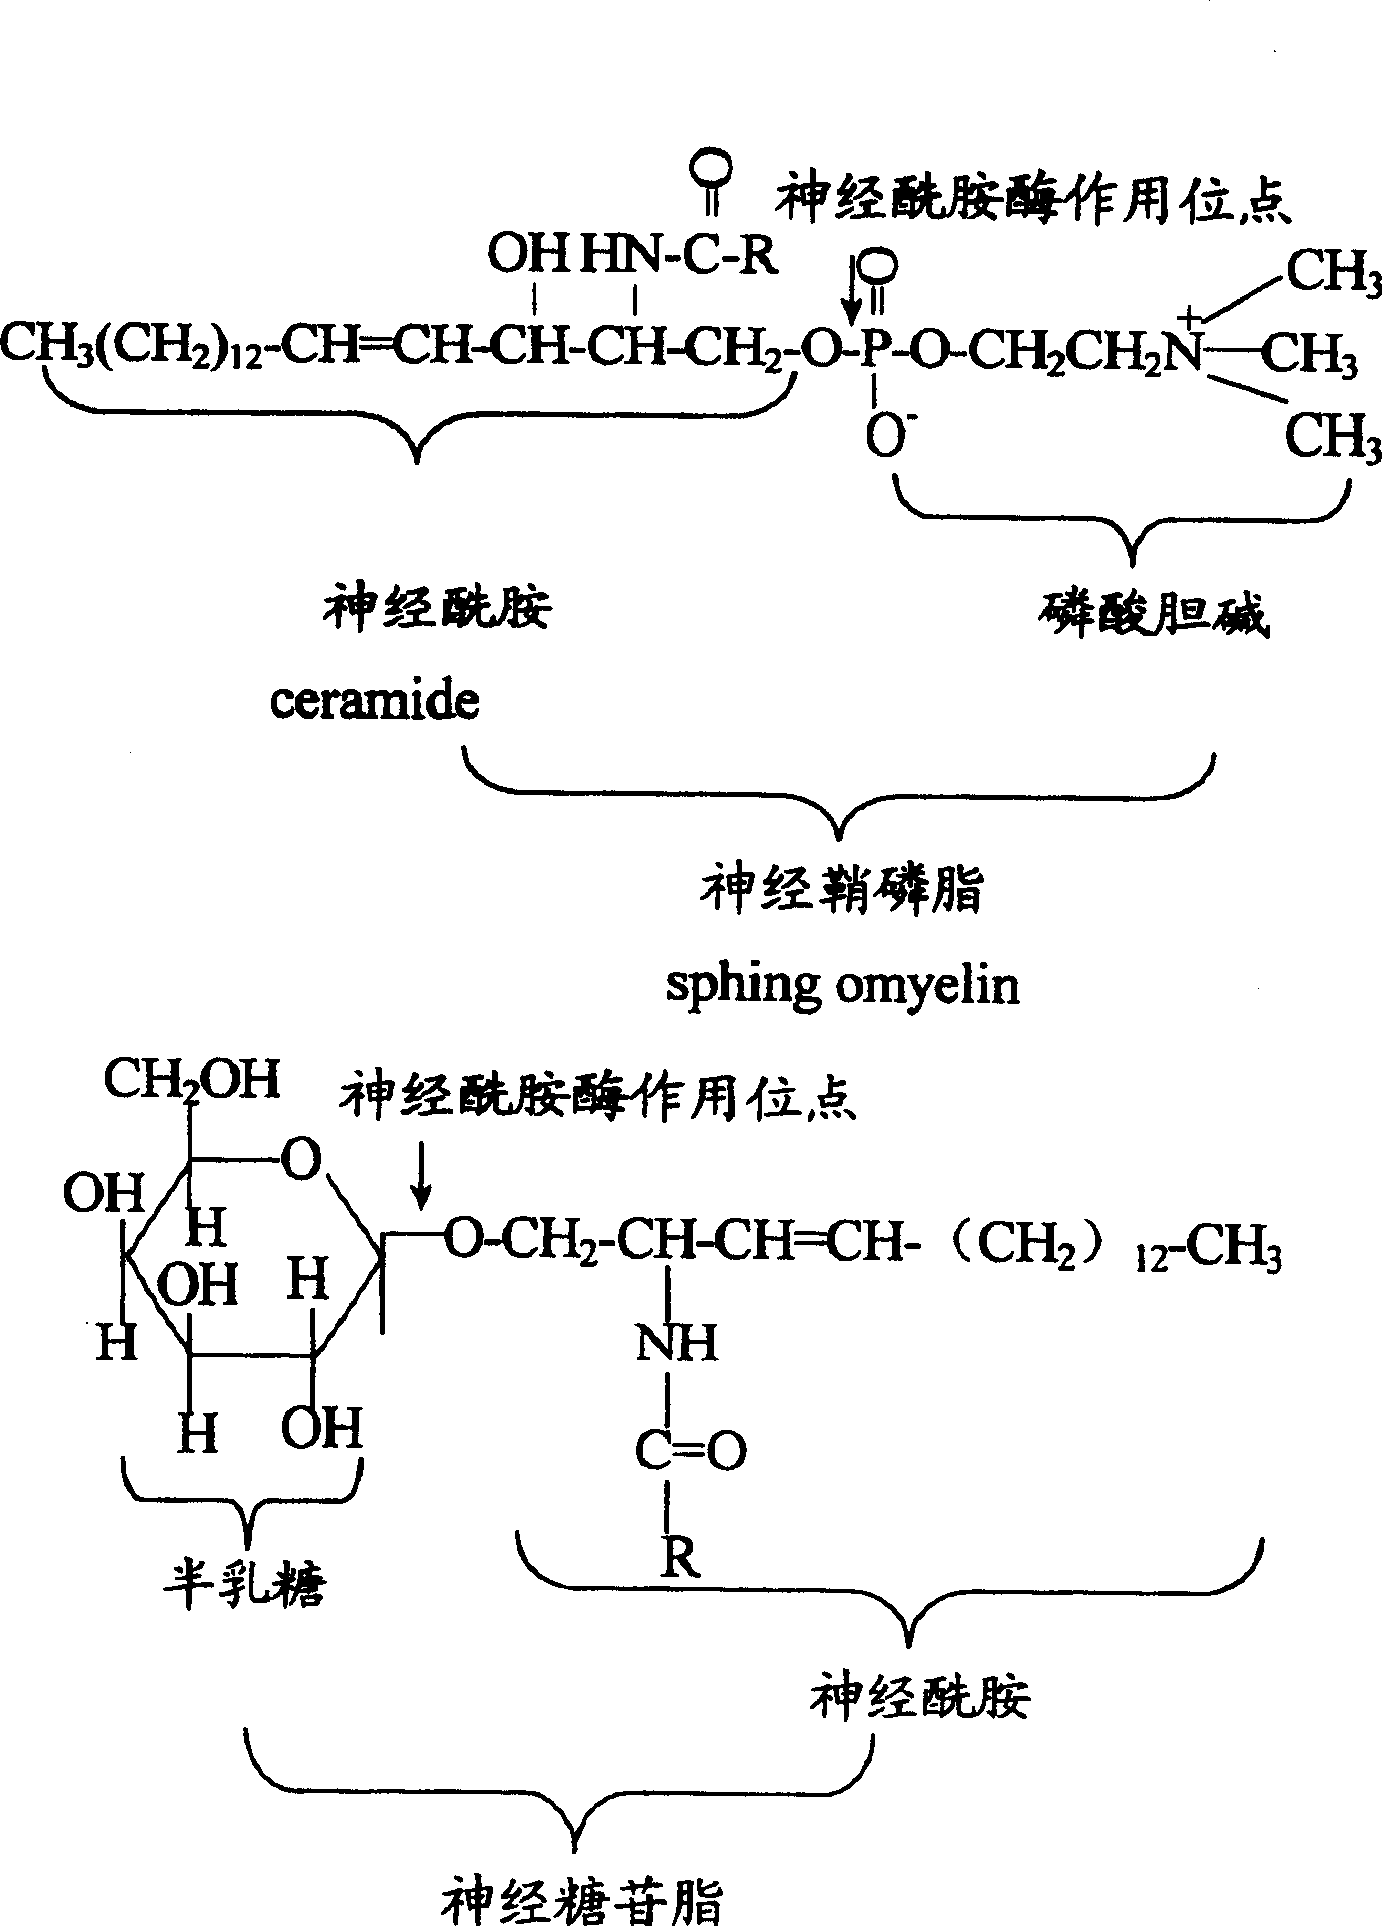 Application of Actinomucor elegans in use for preparing ceramide